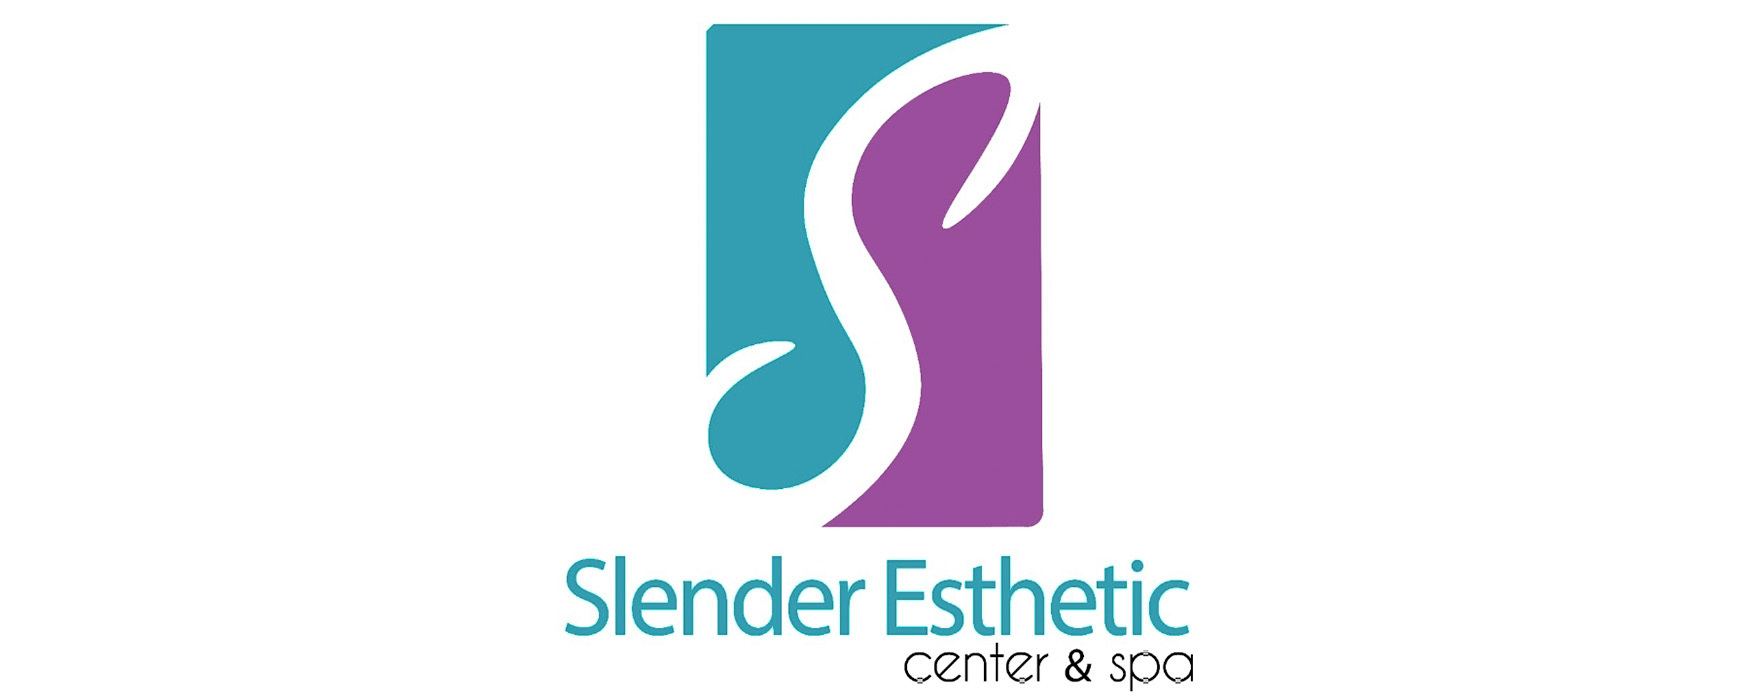 Slender Esthetic Center